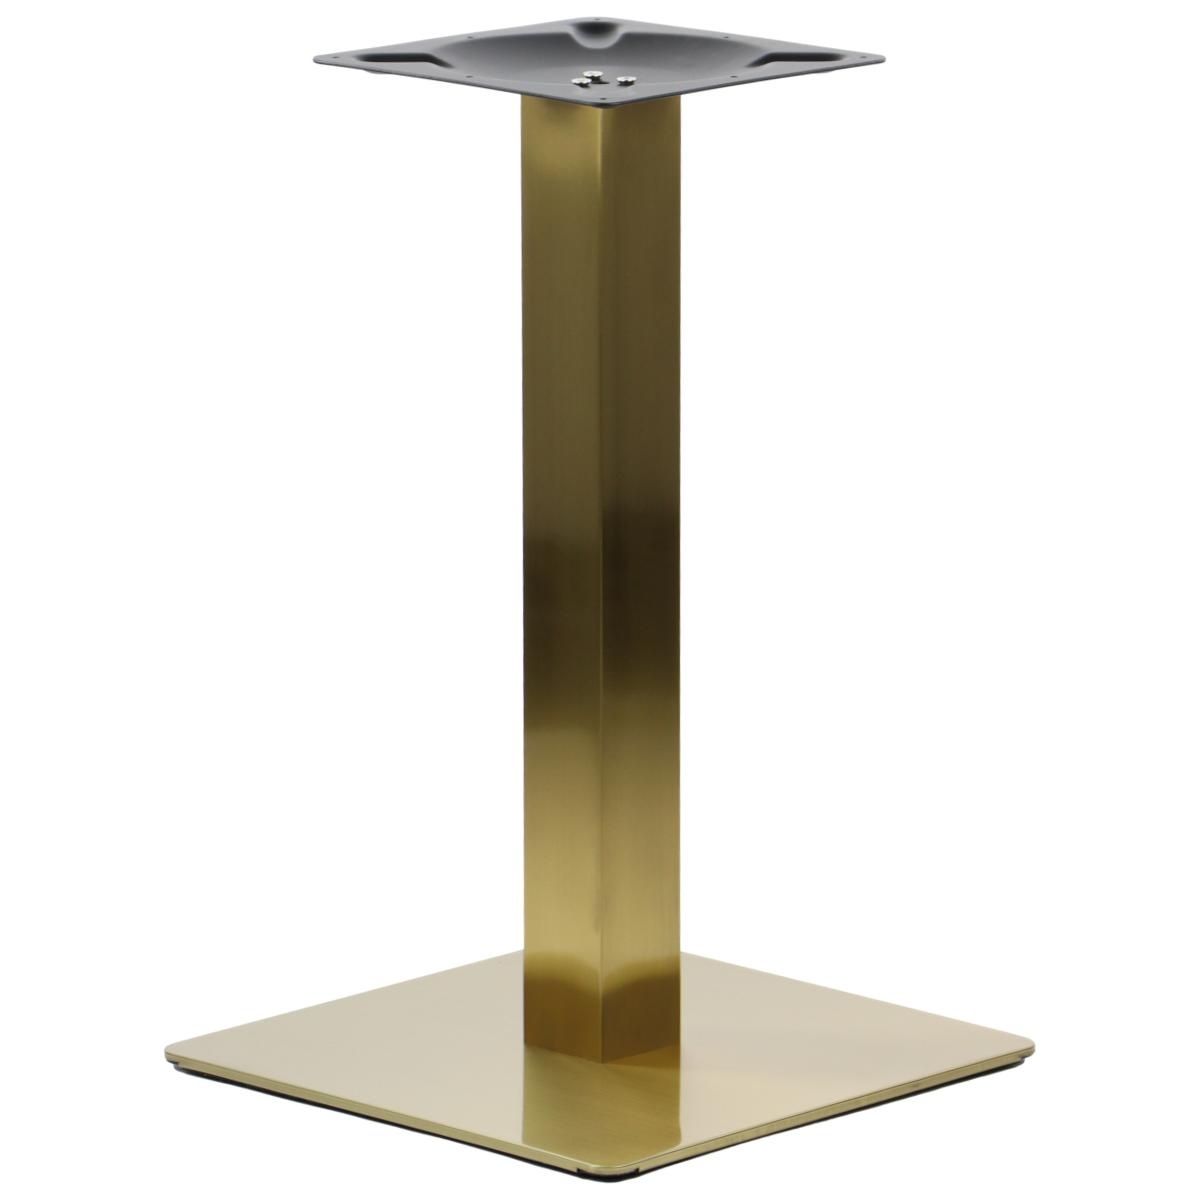 Podstawa do stolika wykonana ze stali nierdzewnej w kolorze złotym.